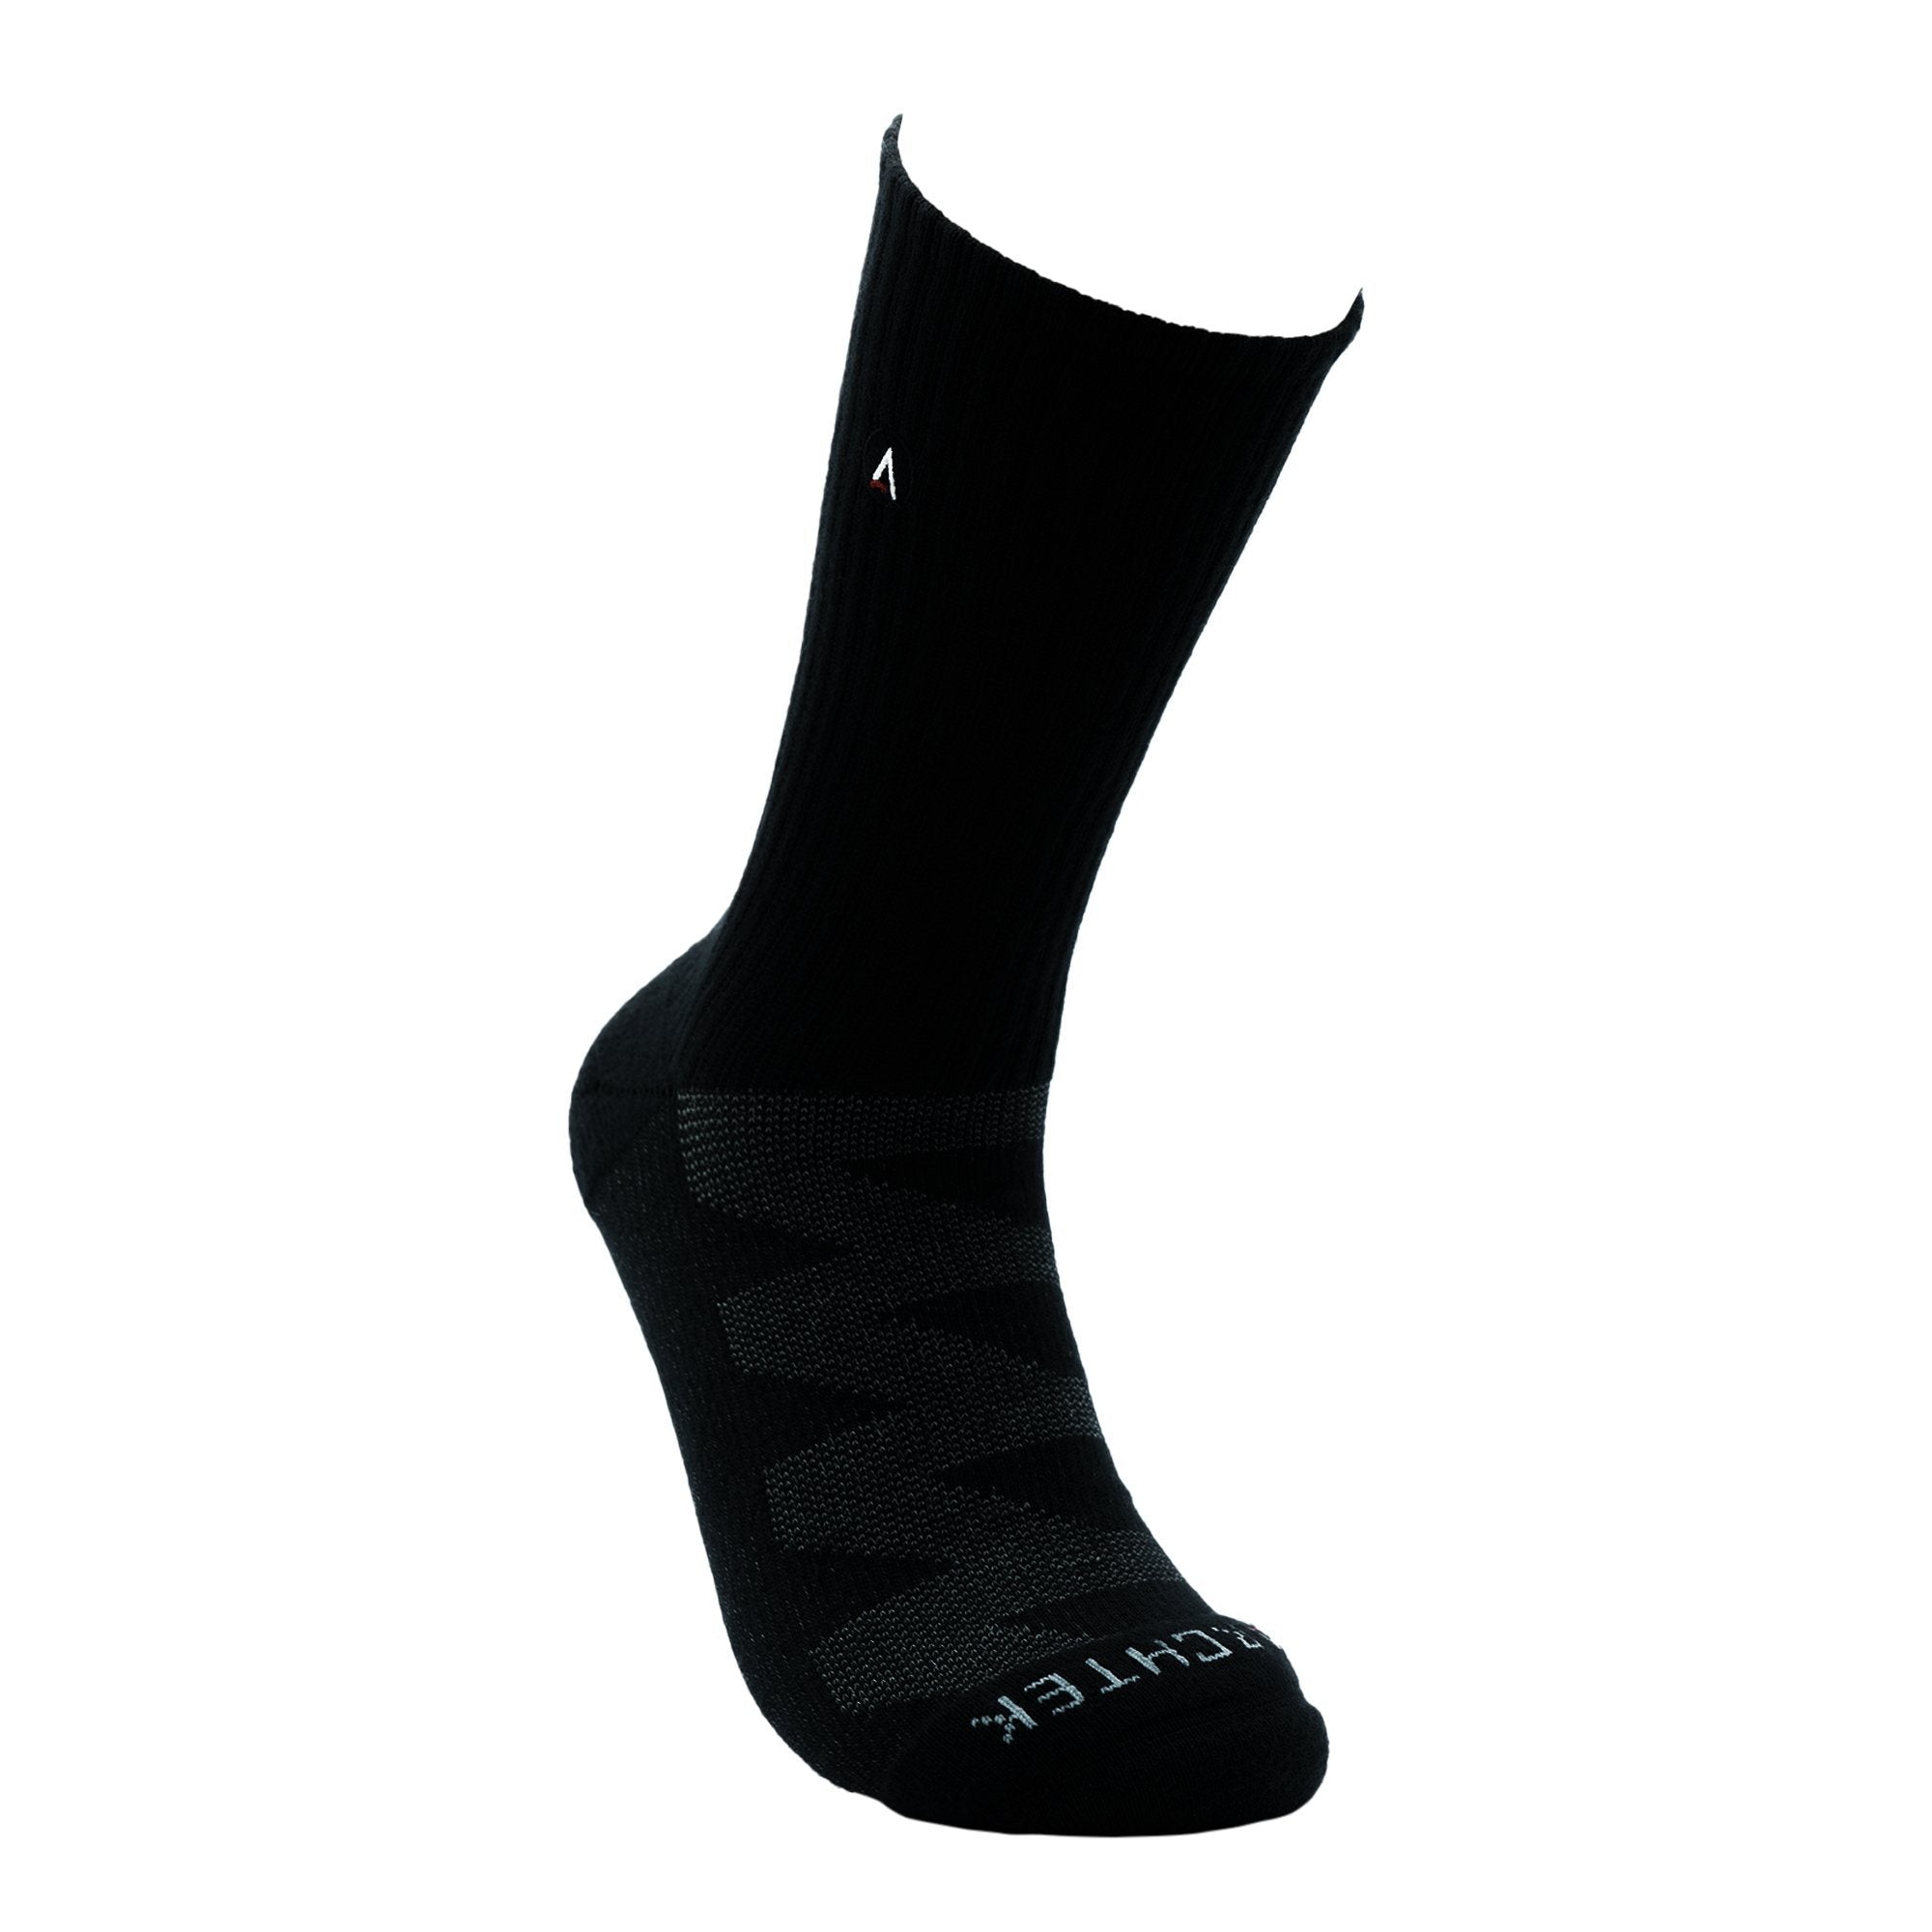 New Athletic Crew Sock in Black improved version athletic socks ArchTek 